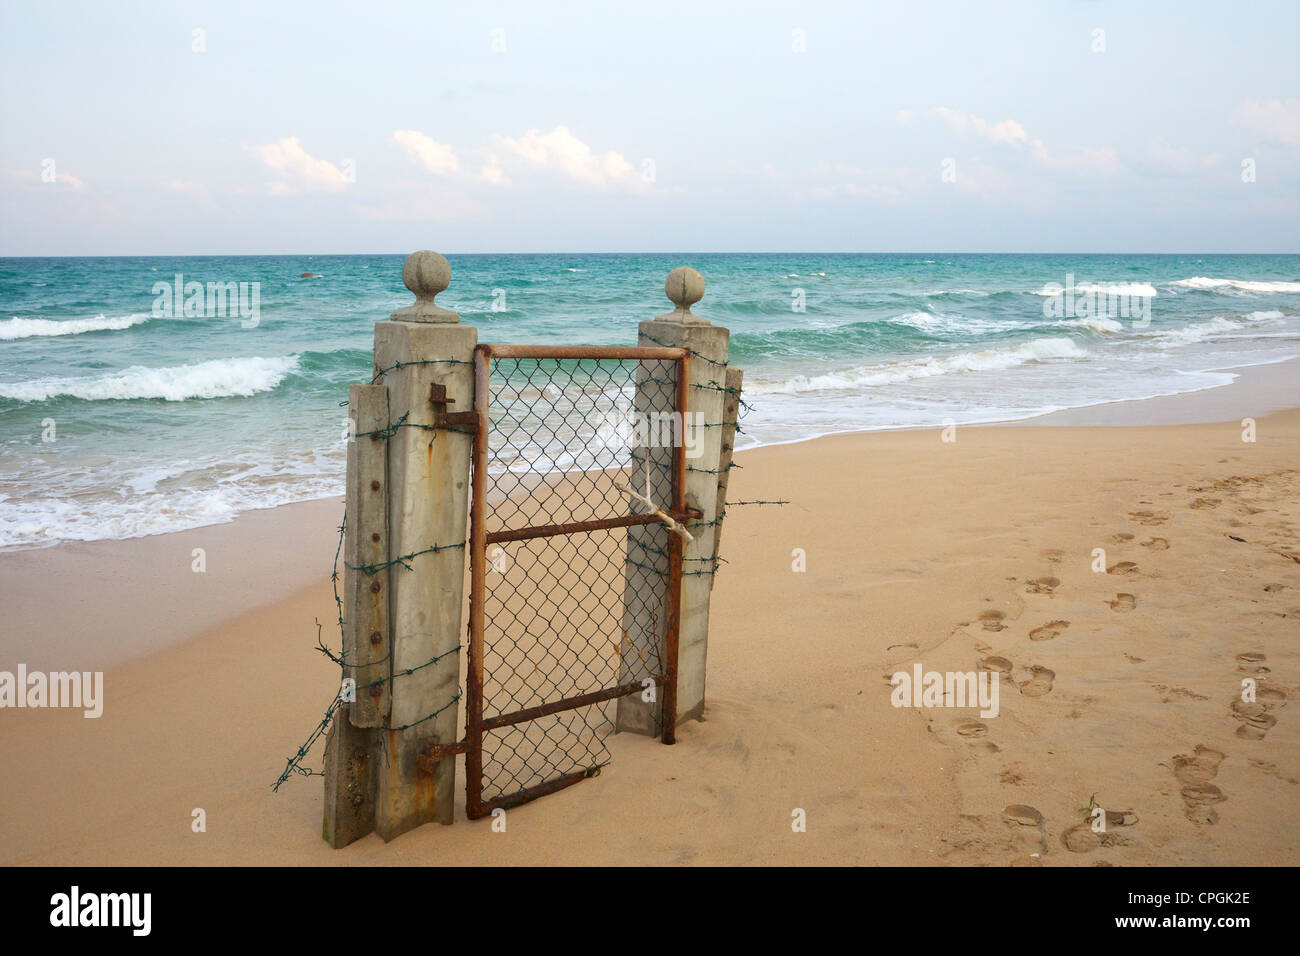 Puerta de entrada a la playa, Nilaveli, Trincomalee, Sri Lanka, Asia Foto de stock